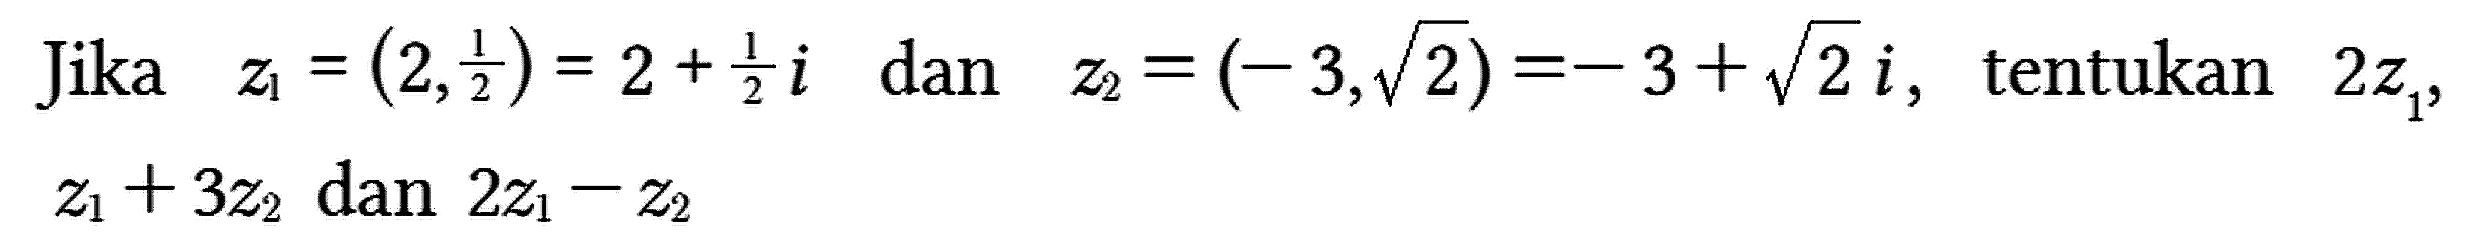 Jika z1 = (2, 1/2) = 2 + 1/2 i dan z2 = (-3, akar(2)) = -3 + akar(2) i, tentukan 2 z1, z1 + 3 z2 dan 2 z1 - z2